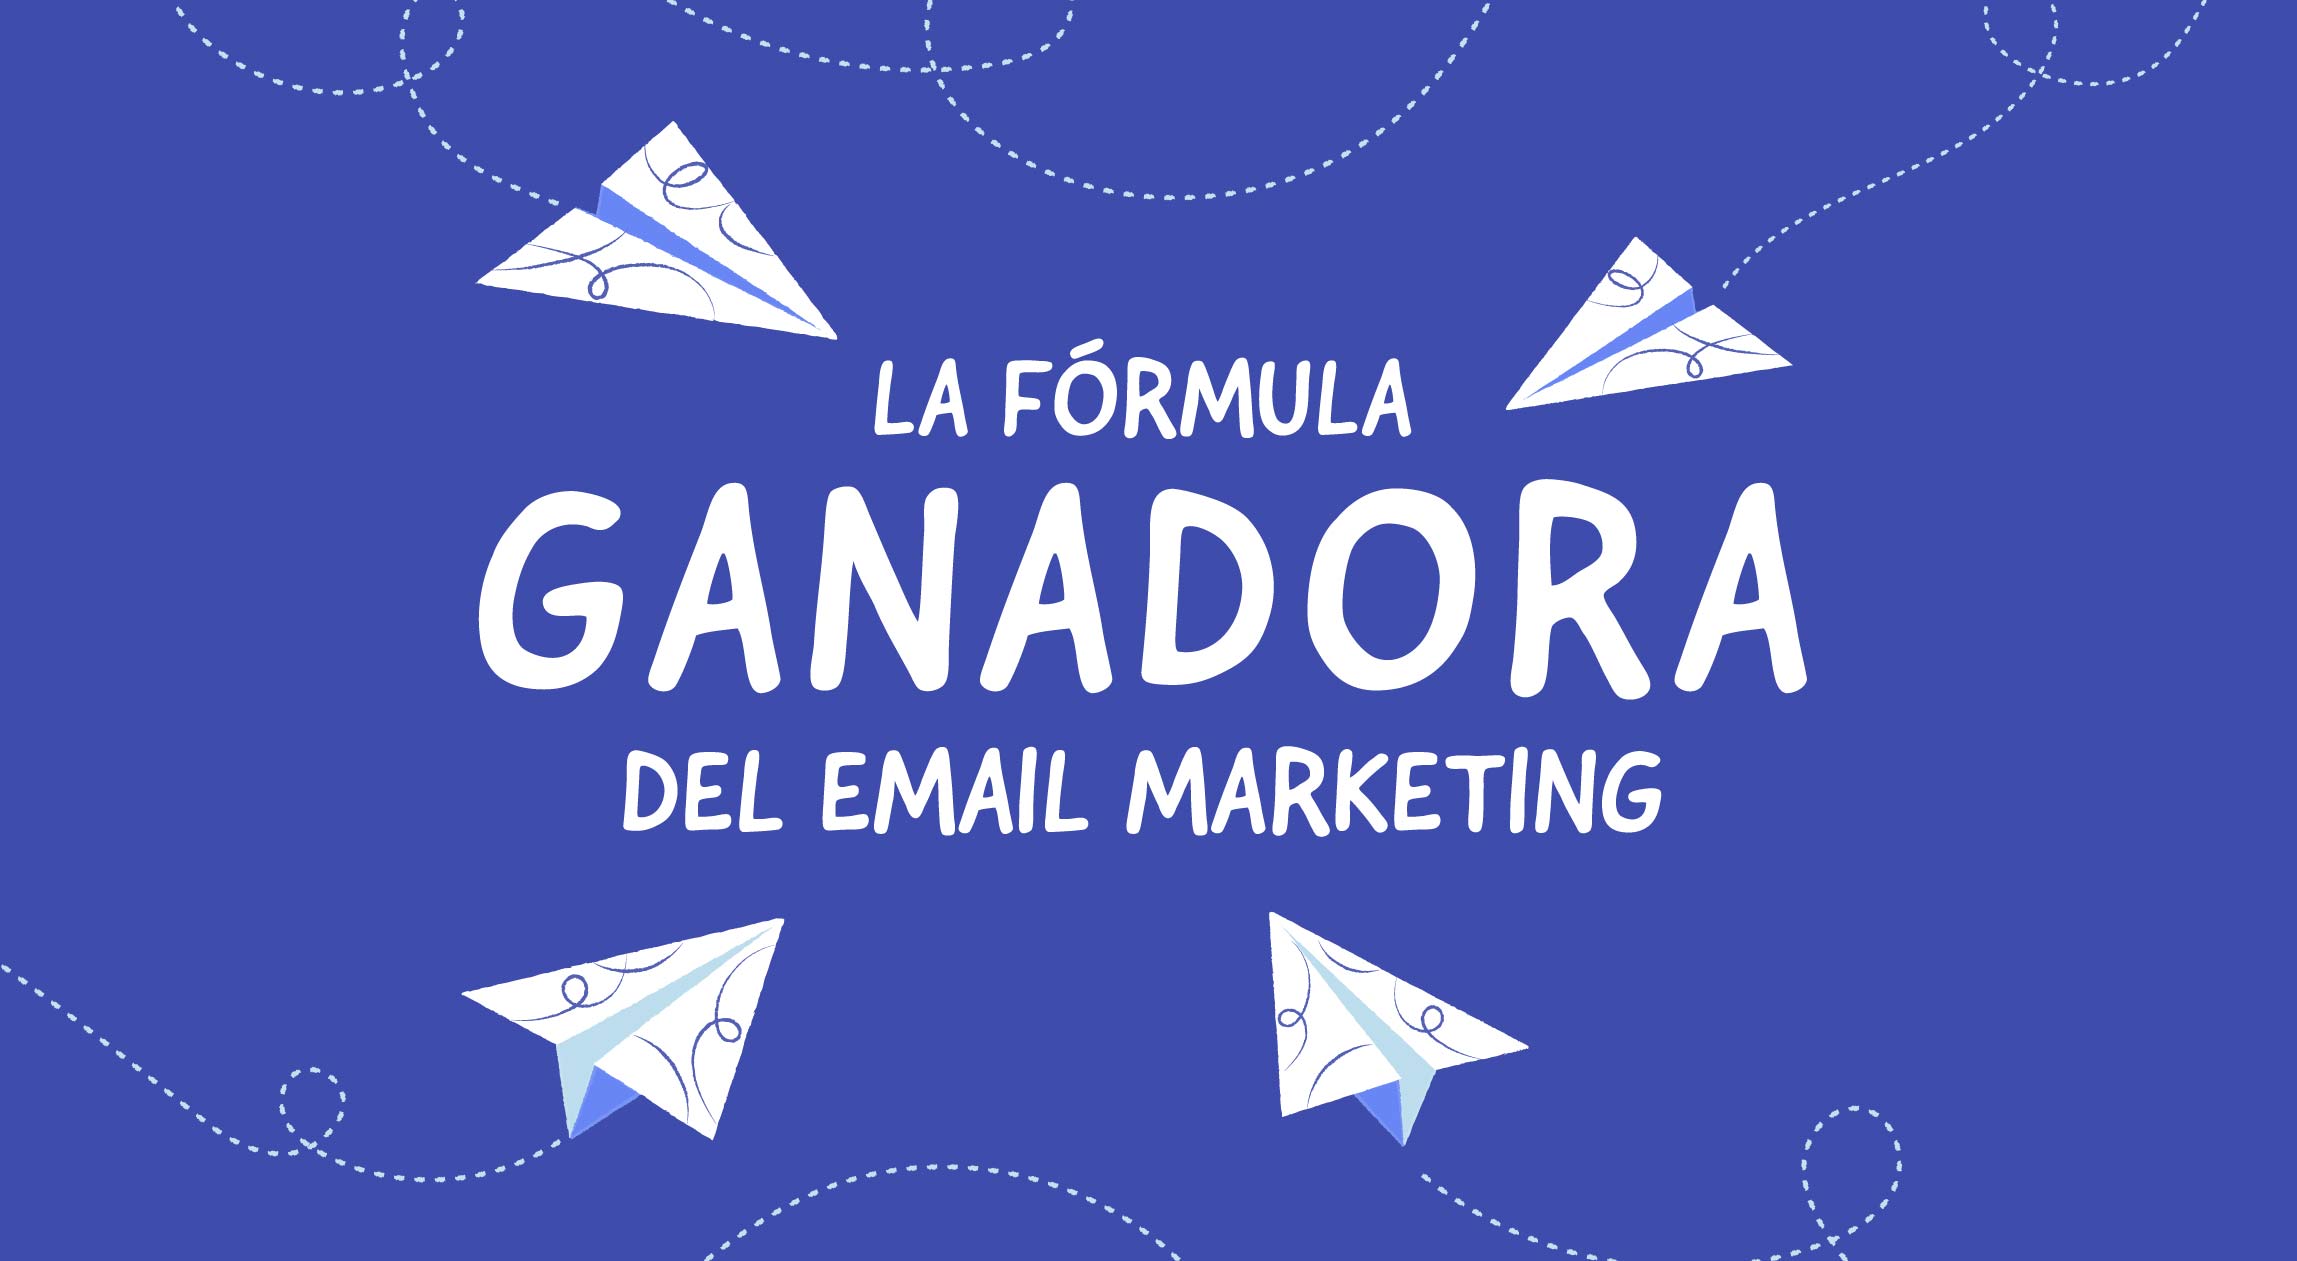 La fórmula ganadora del email marketing